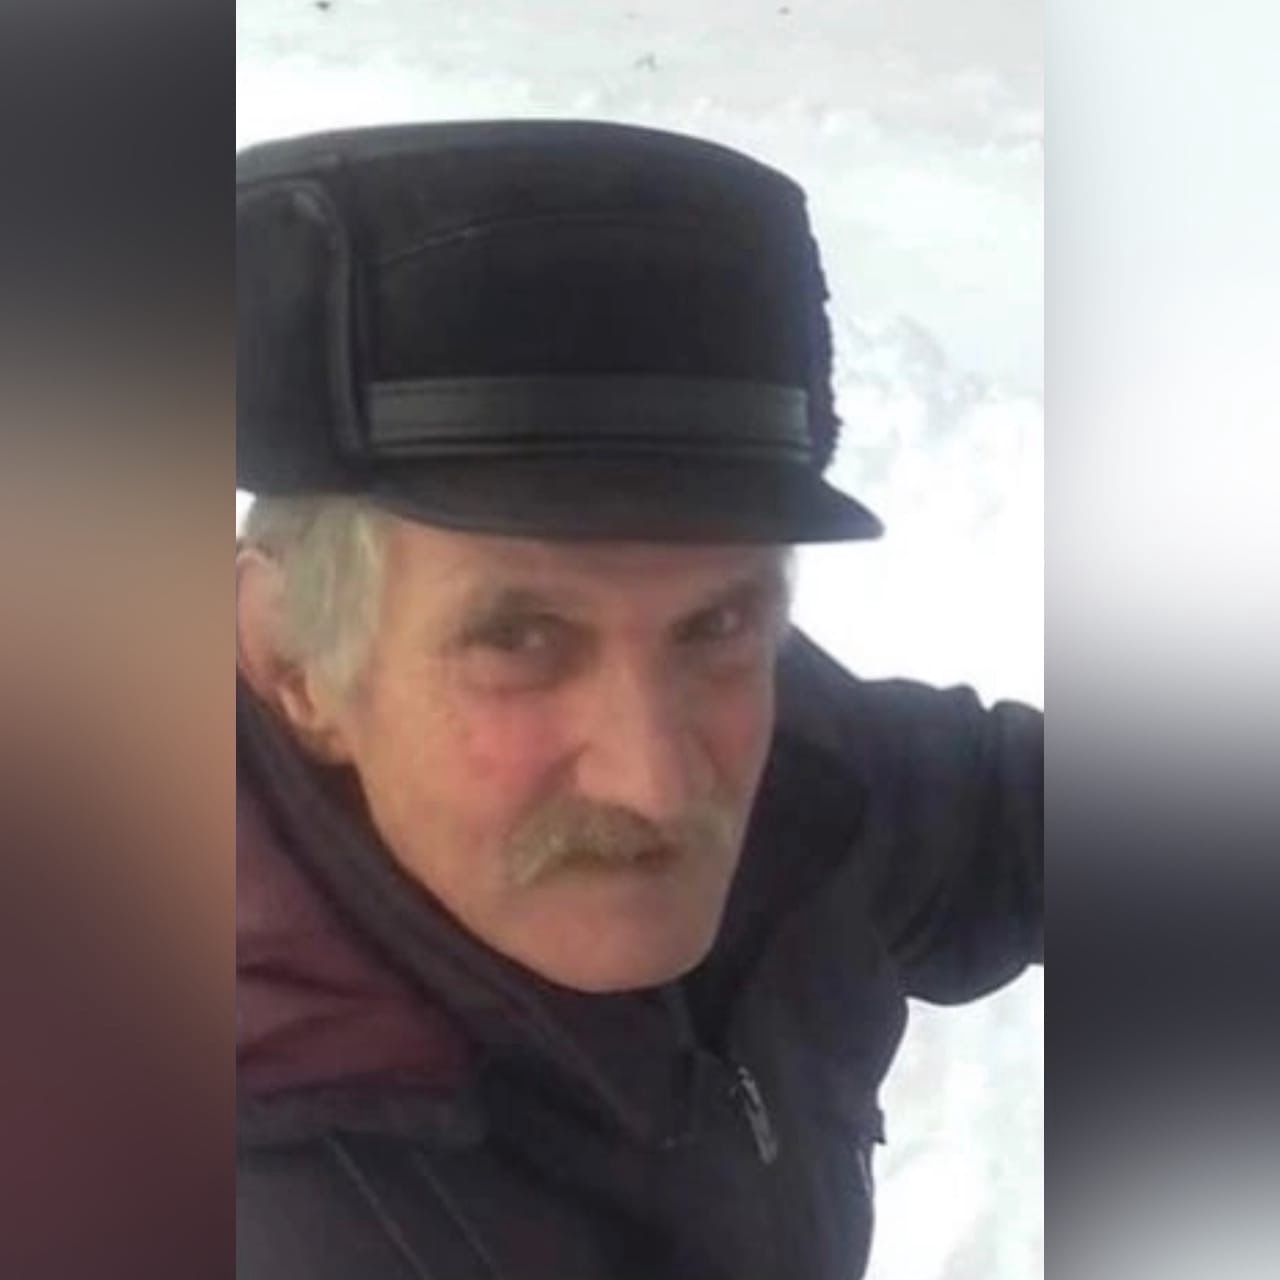 В Смоленской области разыскивают пропавшего мужчину из Ельни